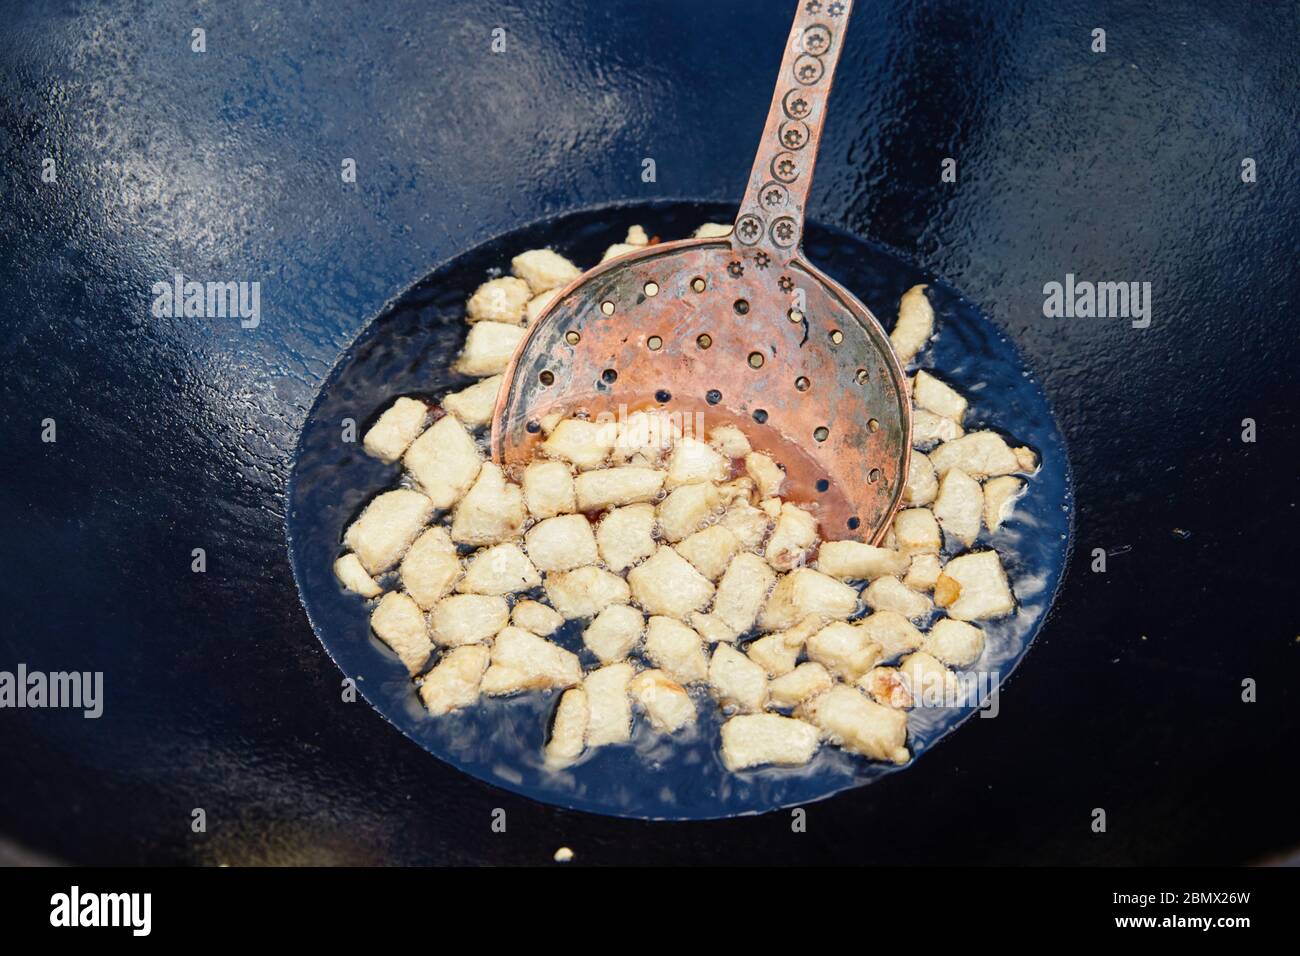 Caldero de arroz fotografías e imágenes de alta resolución - Alamy